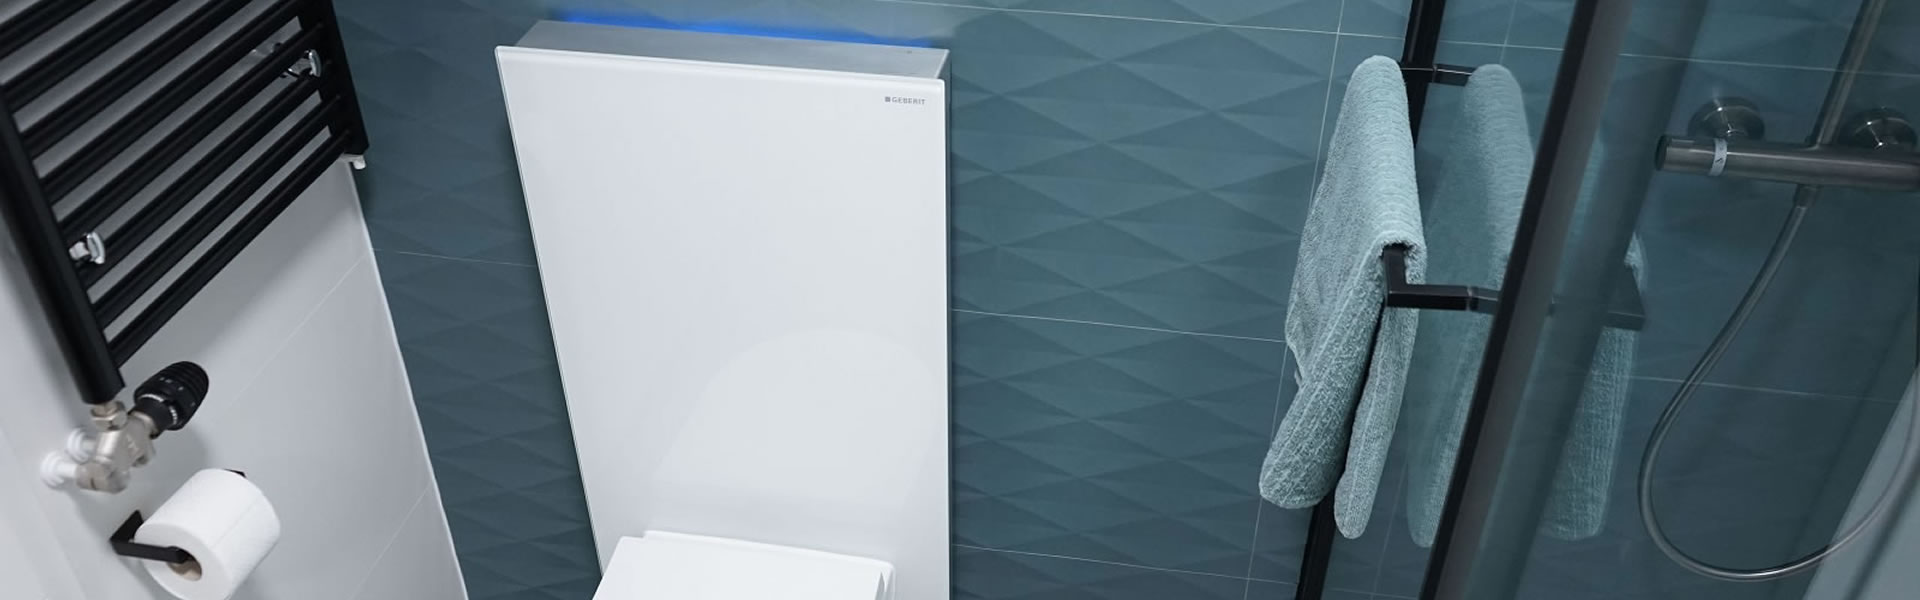 Više od sanitarnog modula – Monolith Plus unosi novu dimenziju u kupaonice